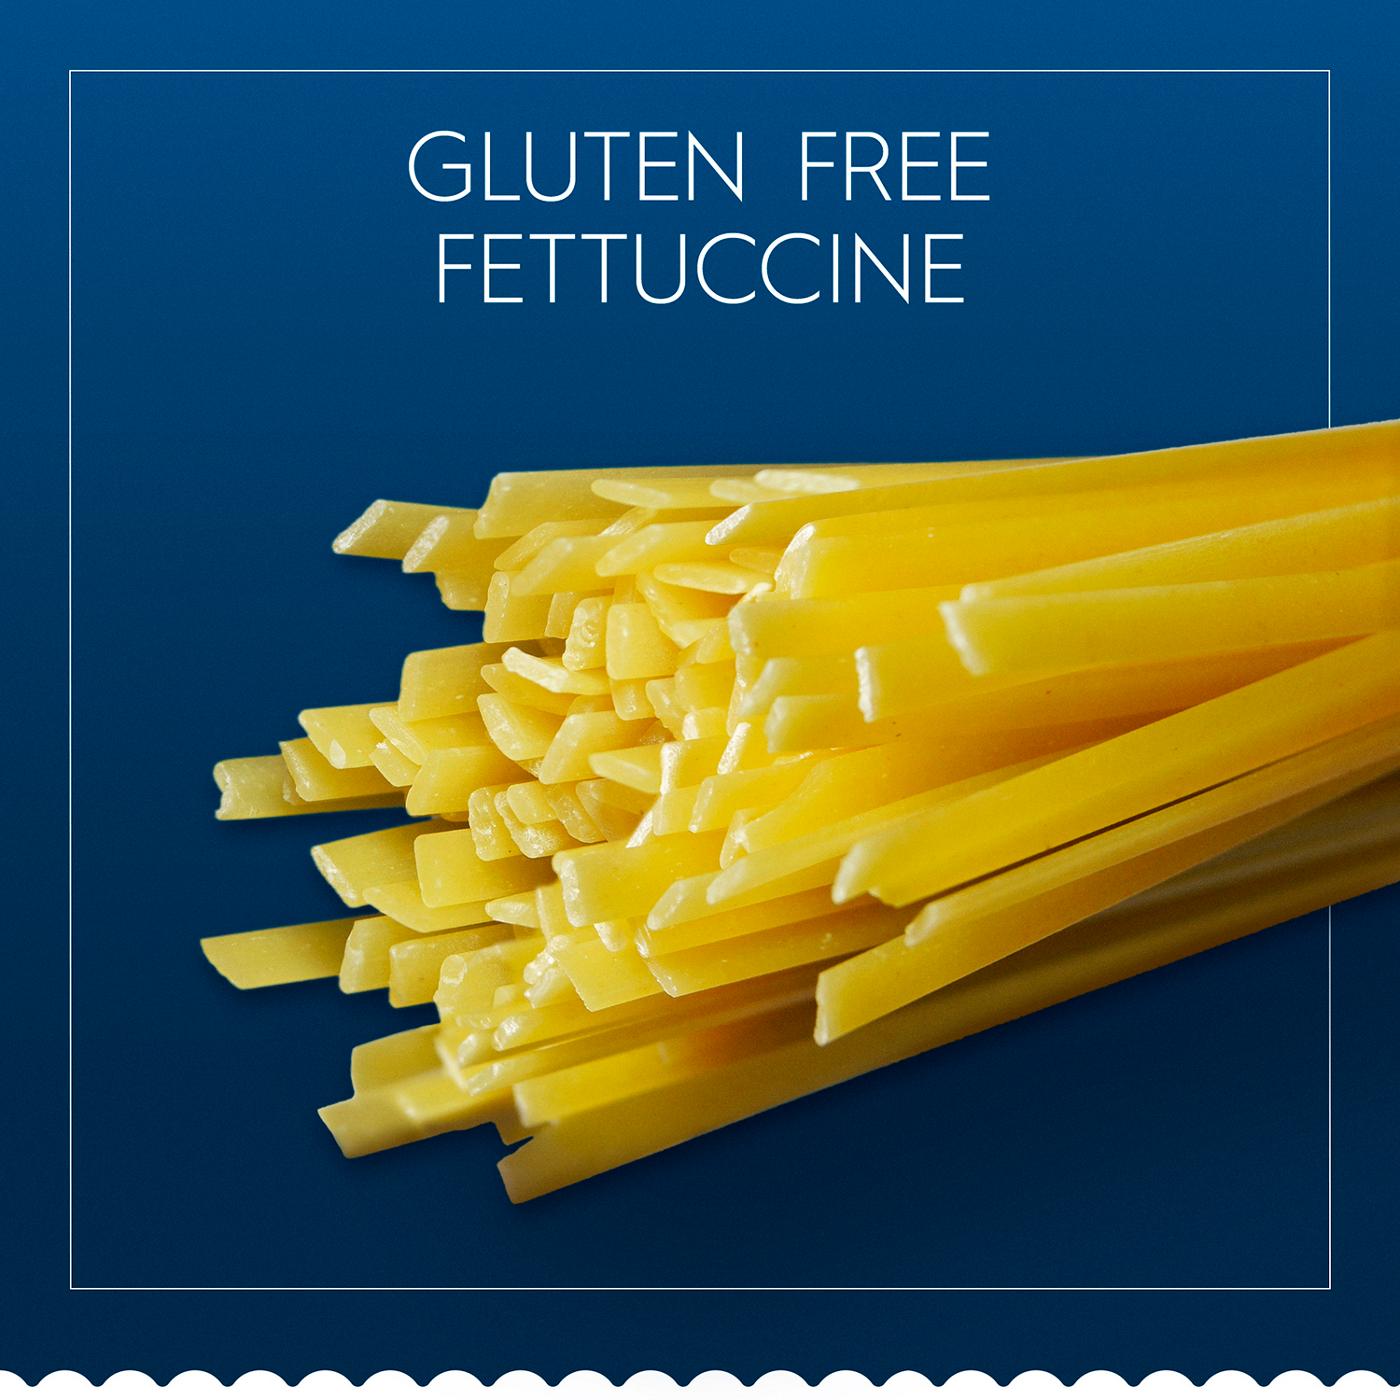 Barilla Gluten Free Fettuccine Pasta; image 6 of 7